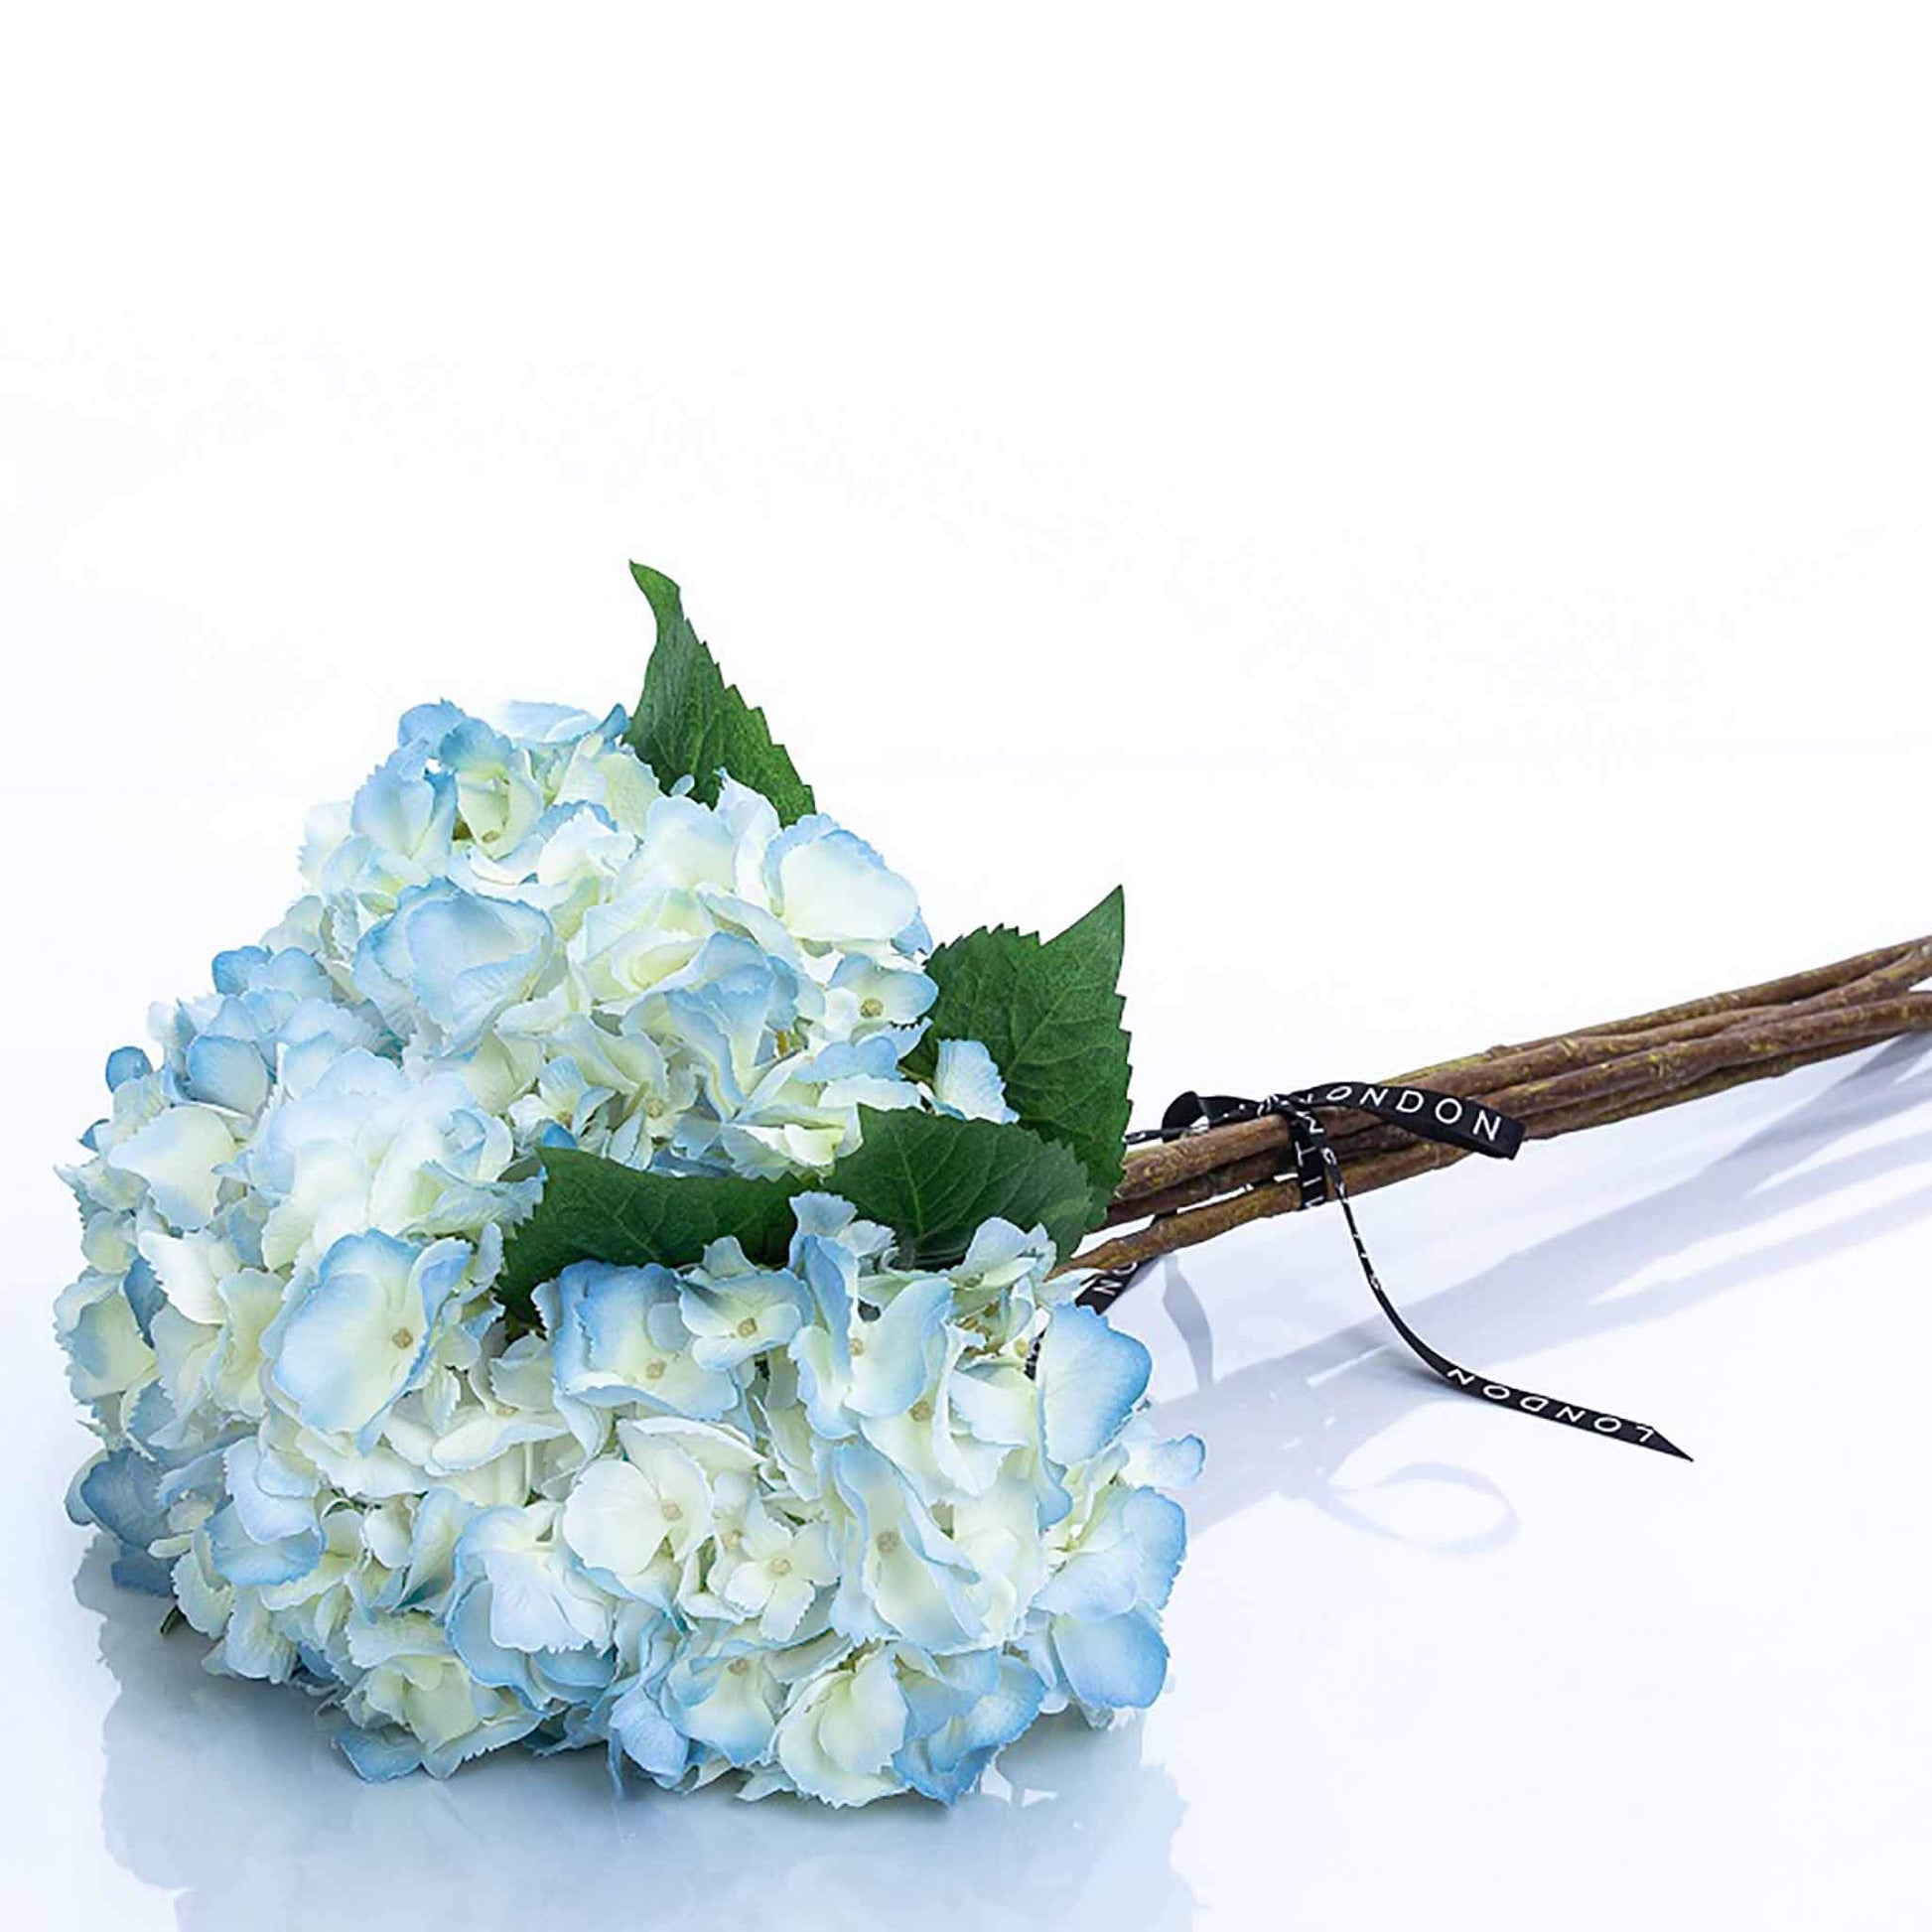 Luxury pale blue faux hydrangea bouquet